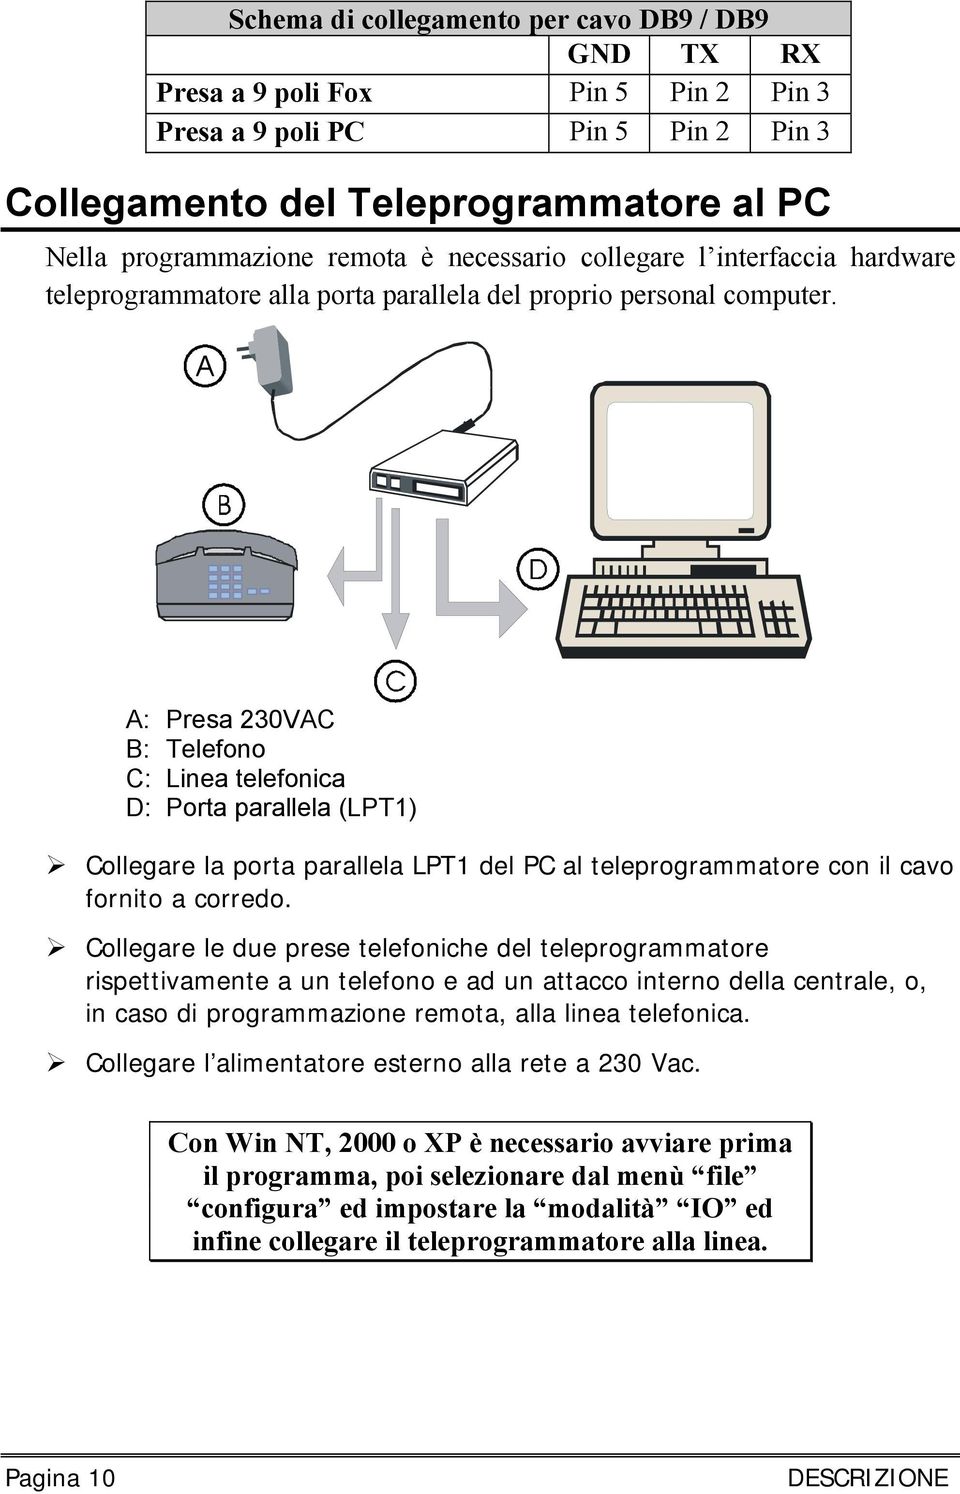 A: Presa 230VAC B: Telefono C: Linea telefonica D: Porta parallela (LPT1) Collegare la porta parallela LPT1 del PC al teleprogrammatore con il cavo fornito a corredo.